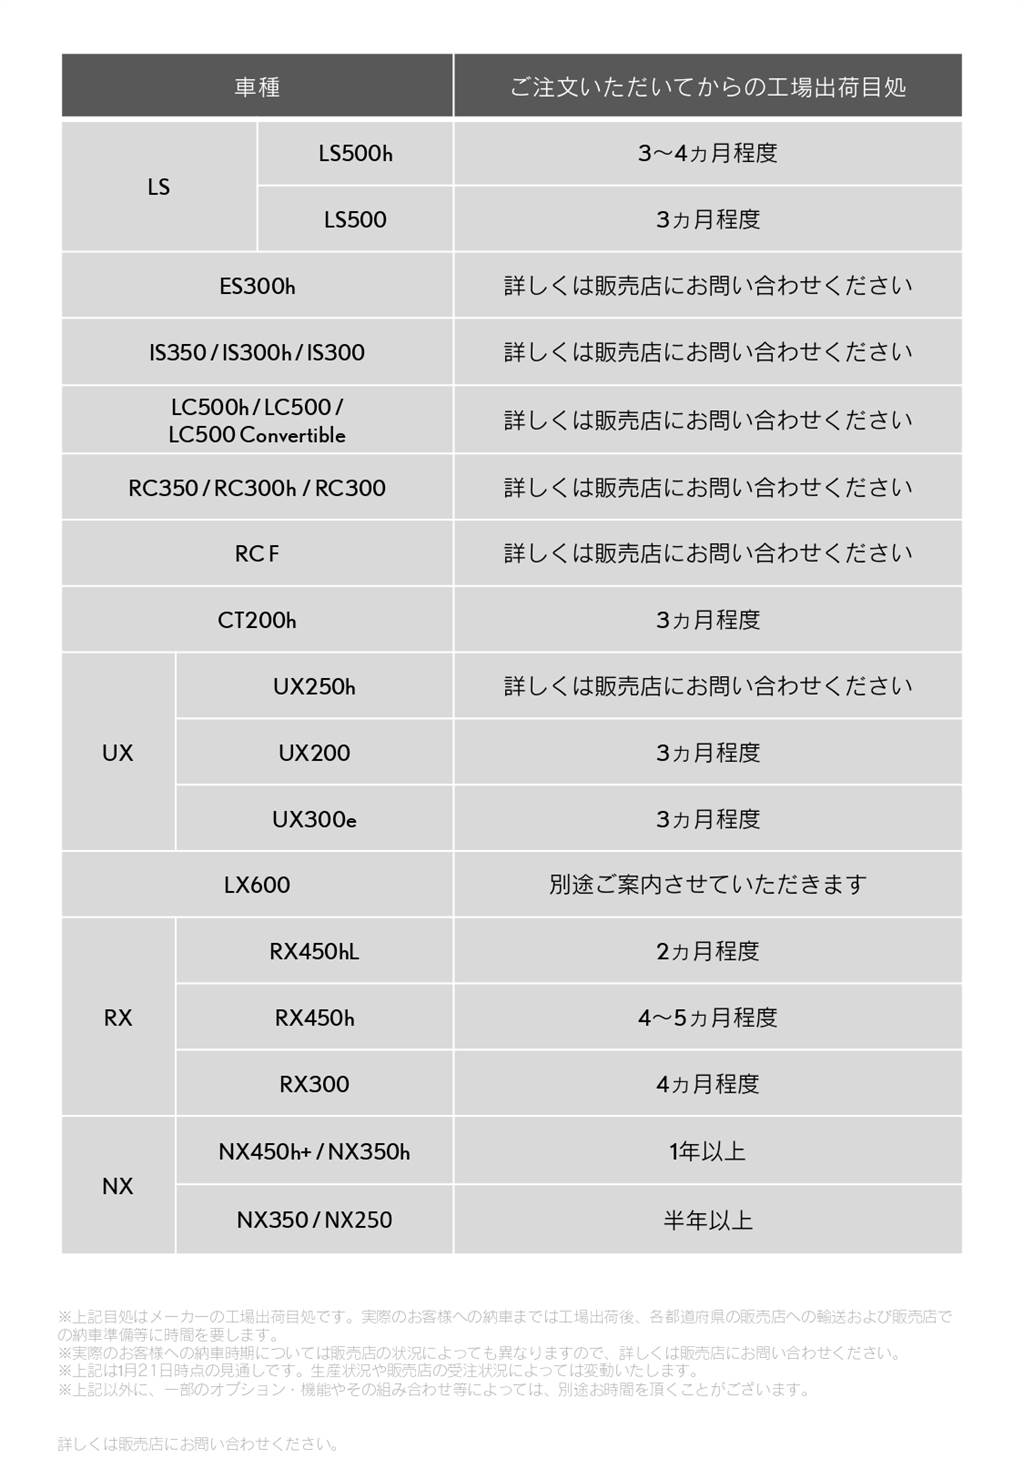 因 omicron 疫情影響，LEXUS 大幅推遲日本市場交車時間、台灣市場部分車型也受到影響！
(圖/CarStuff人車事)